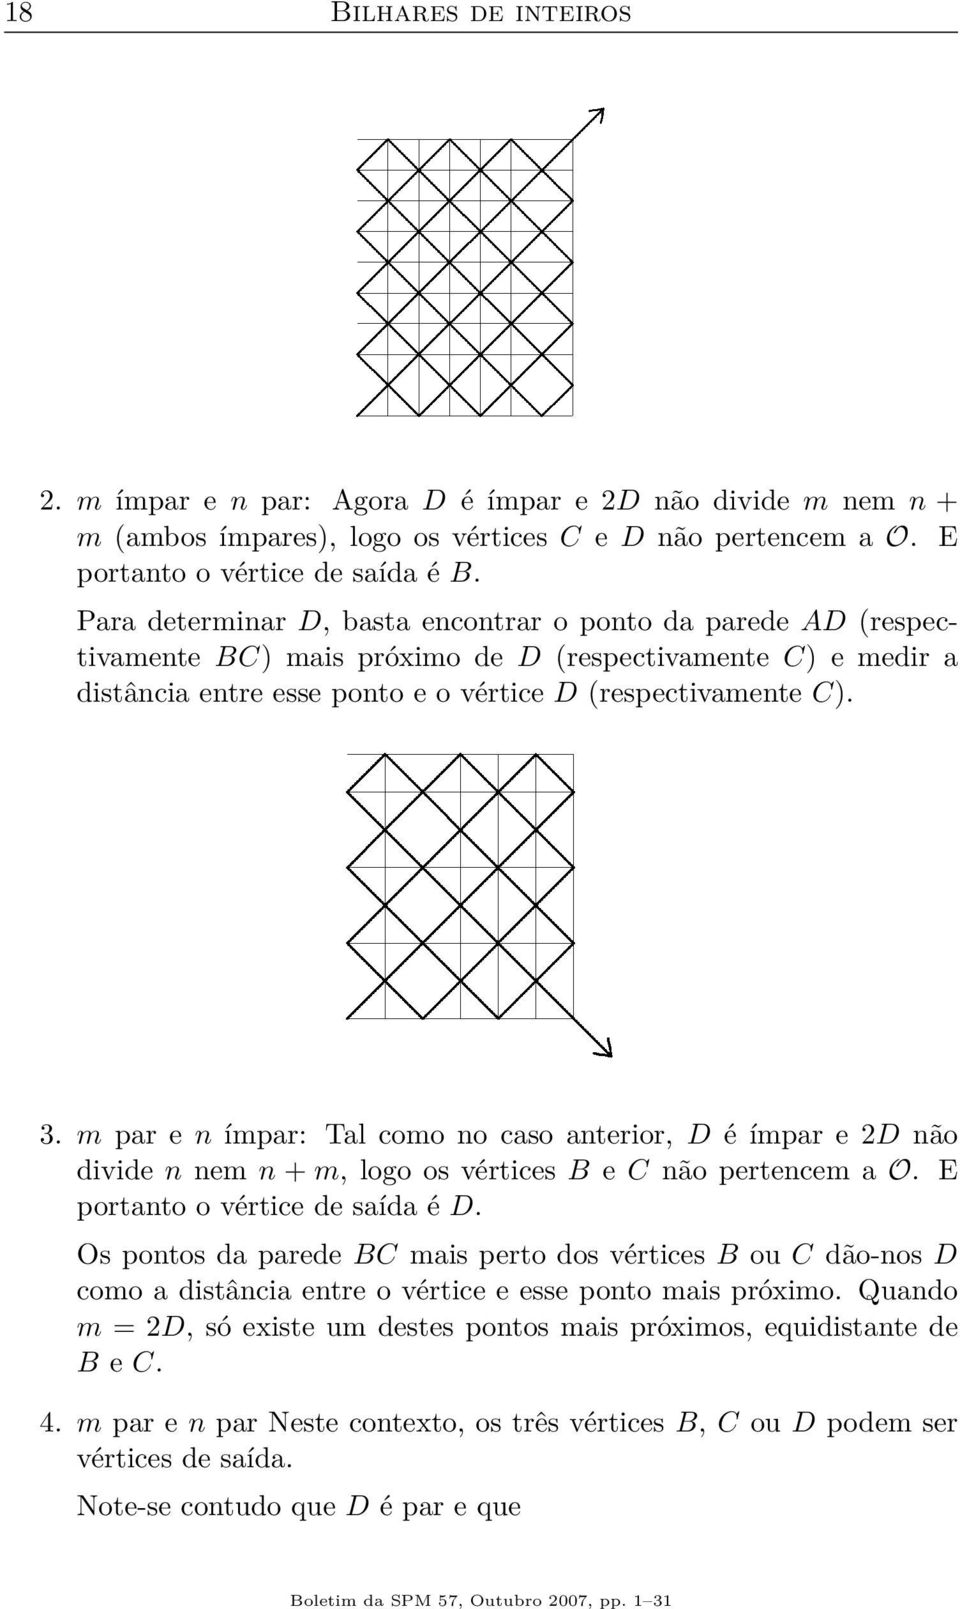 m par e n ímpar: Tal como no caso anterior, D é ímpar e 2D não divide n nem n + m, logo os vértices B e C não pertencem a O. E portanto o vértice de saída é D.